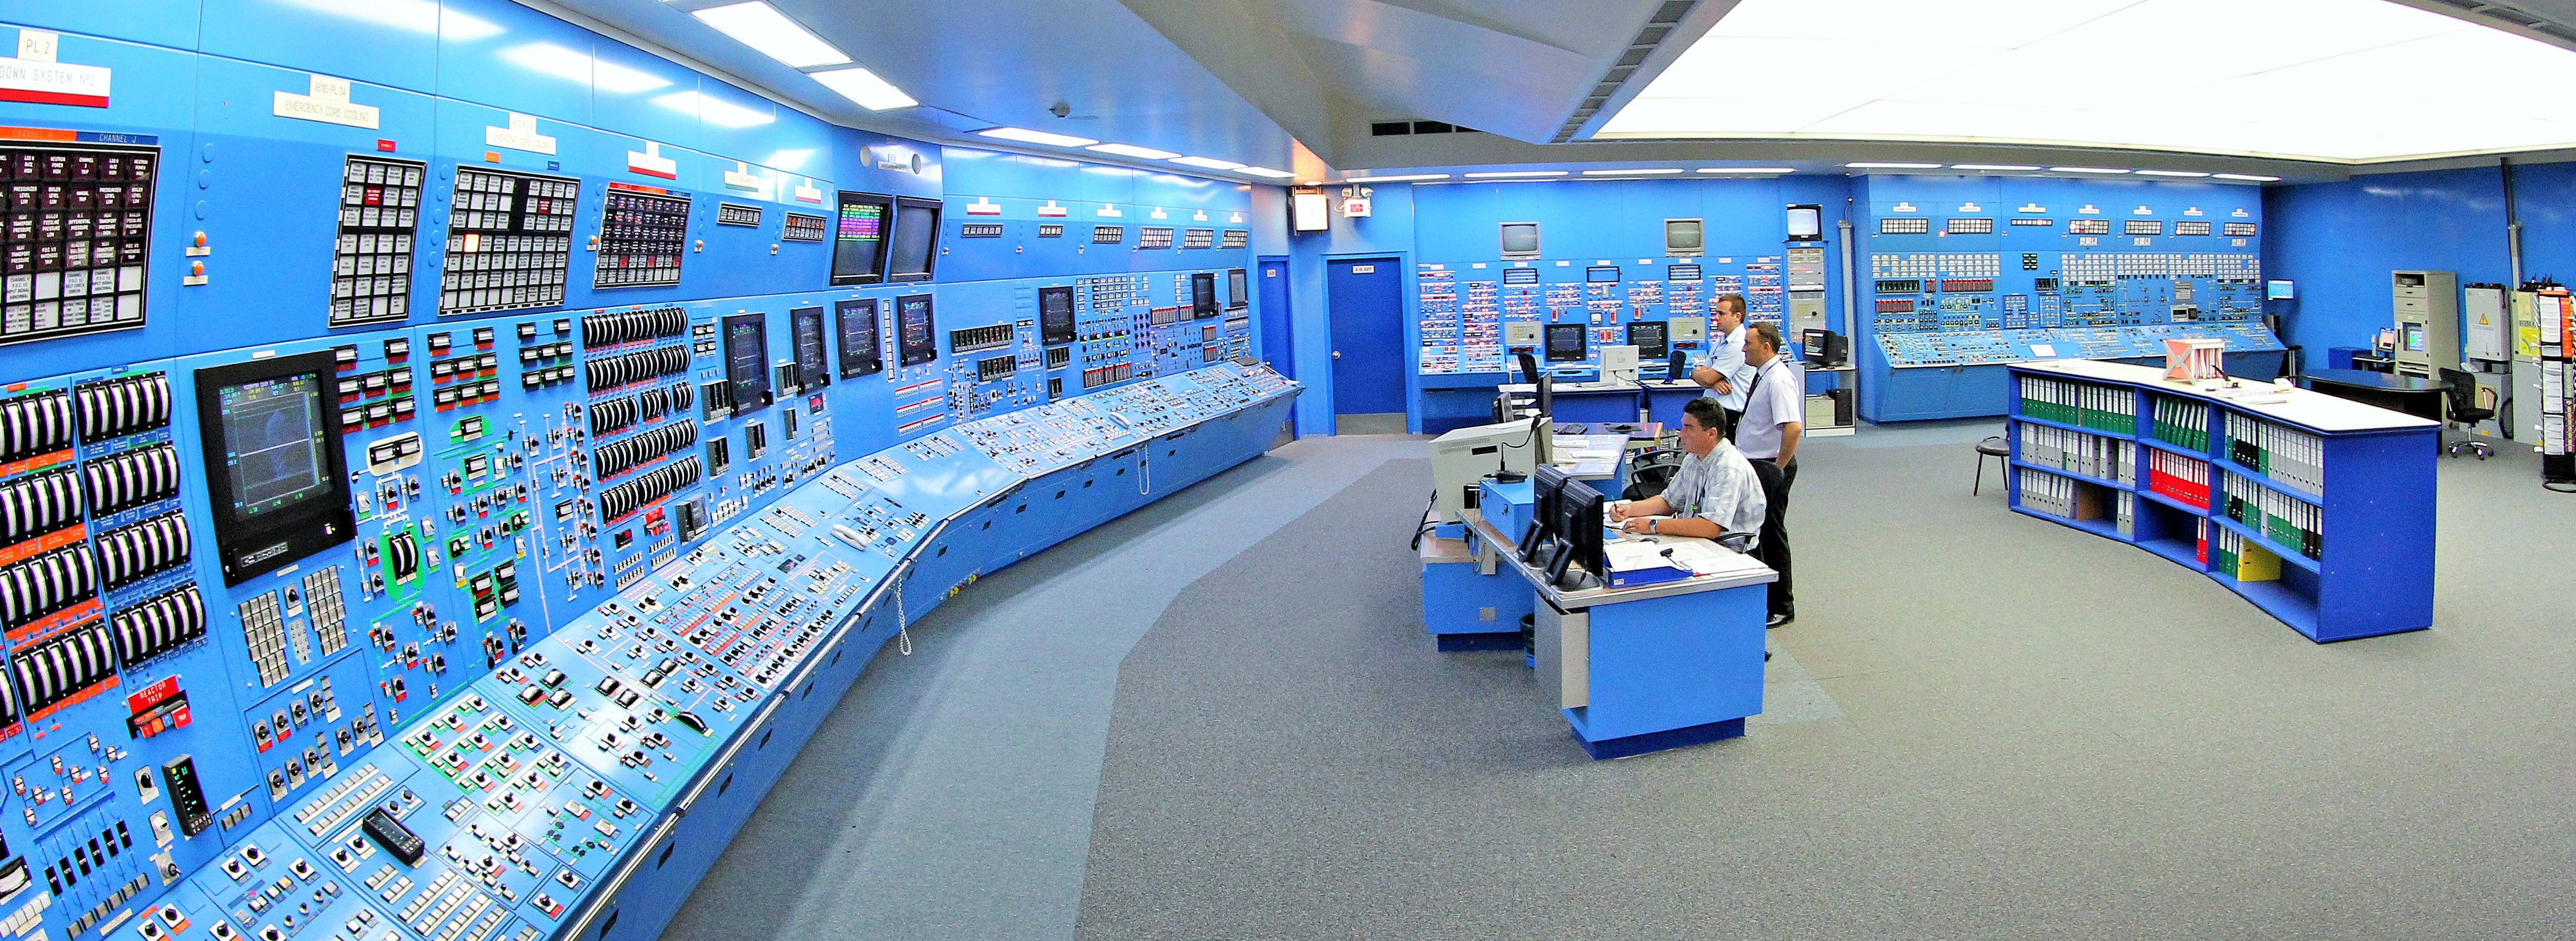 Unit 1 Control Room